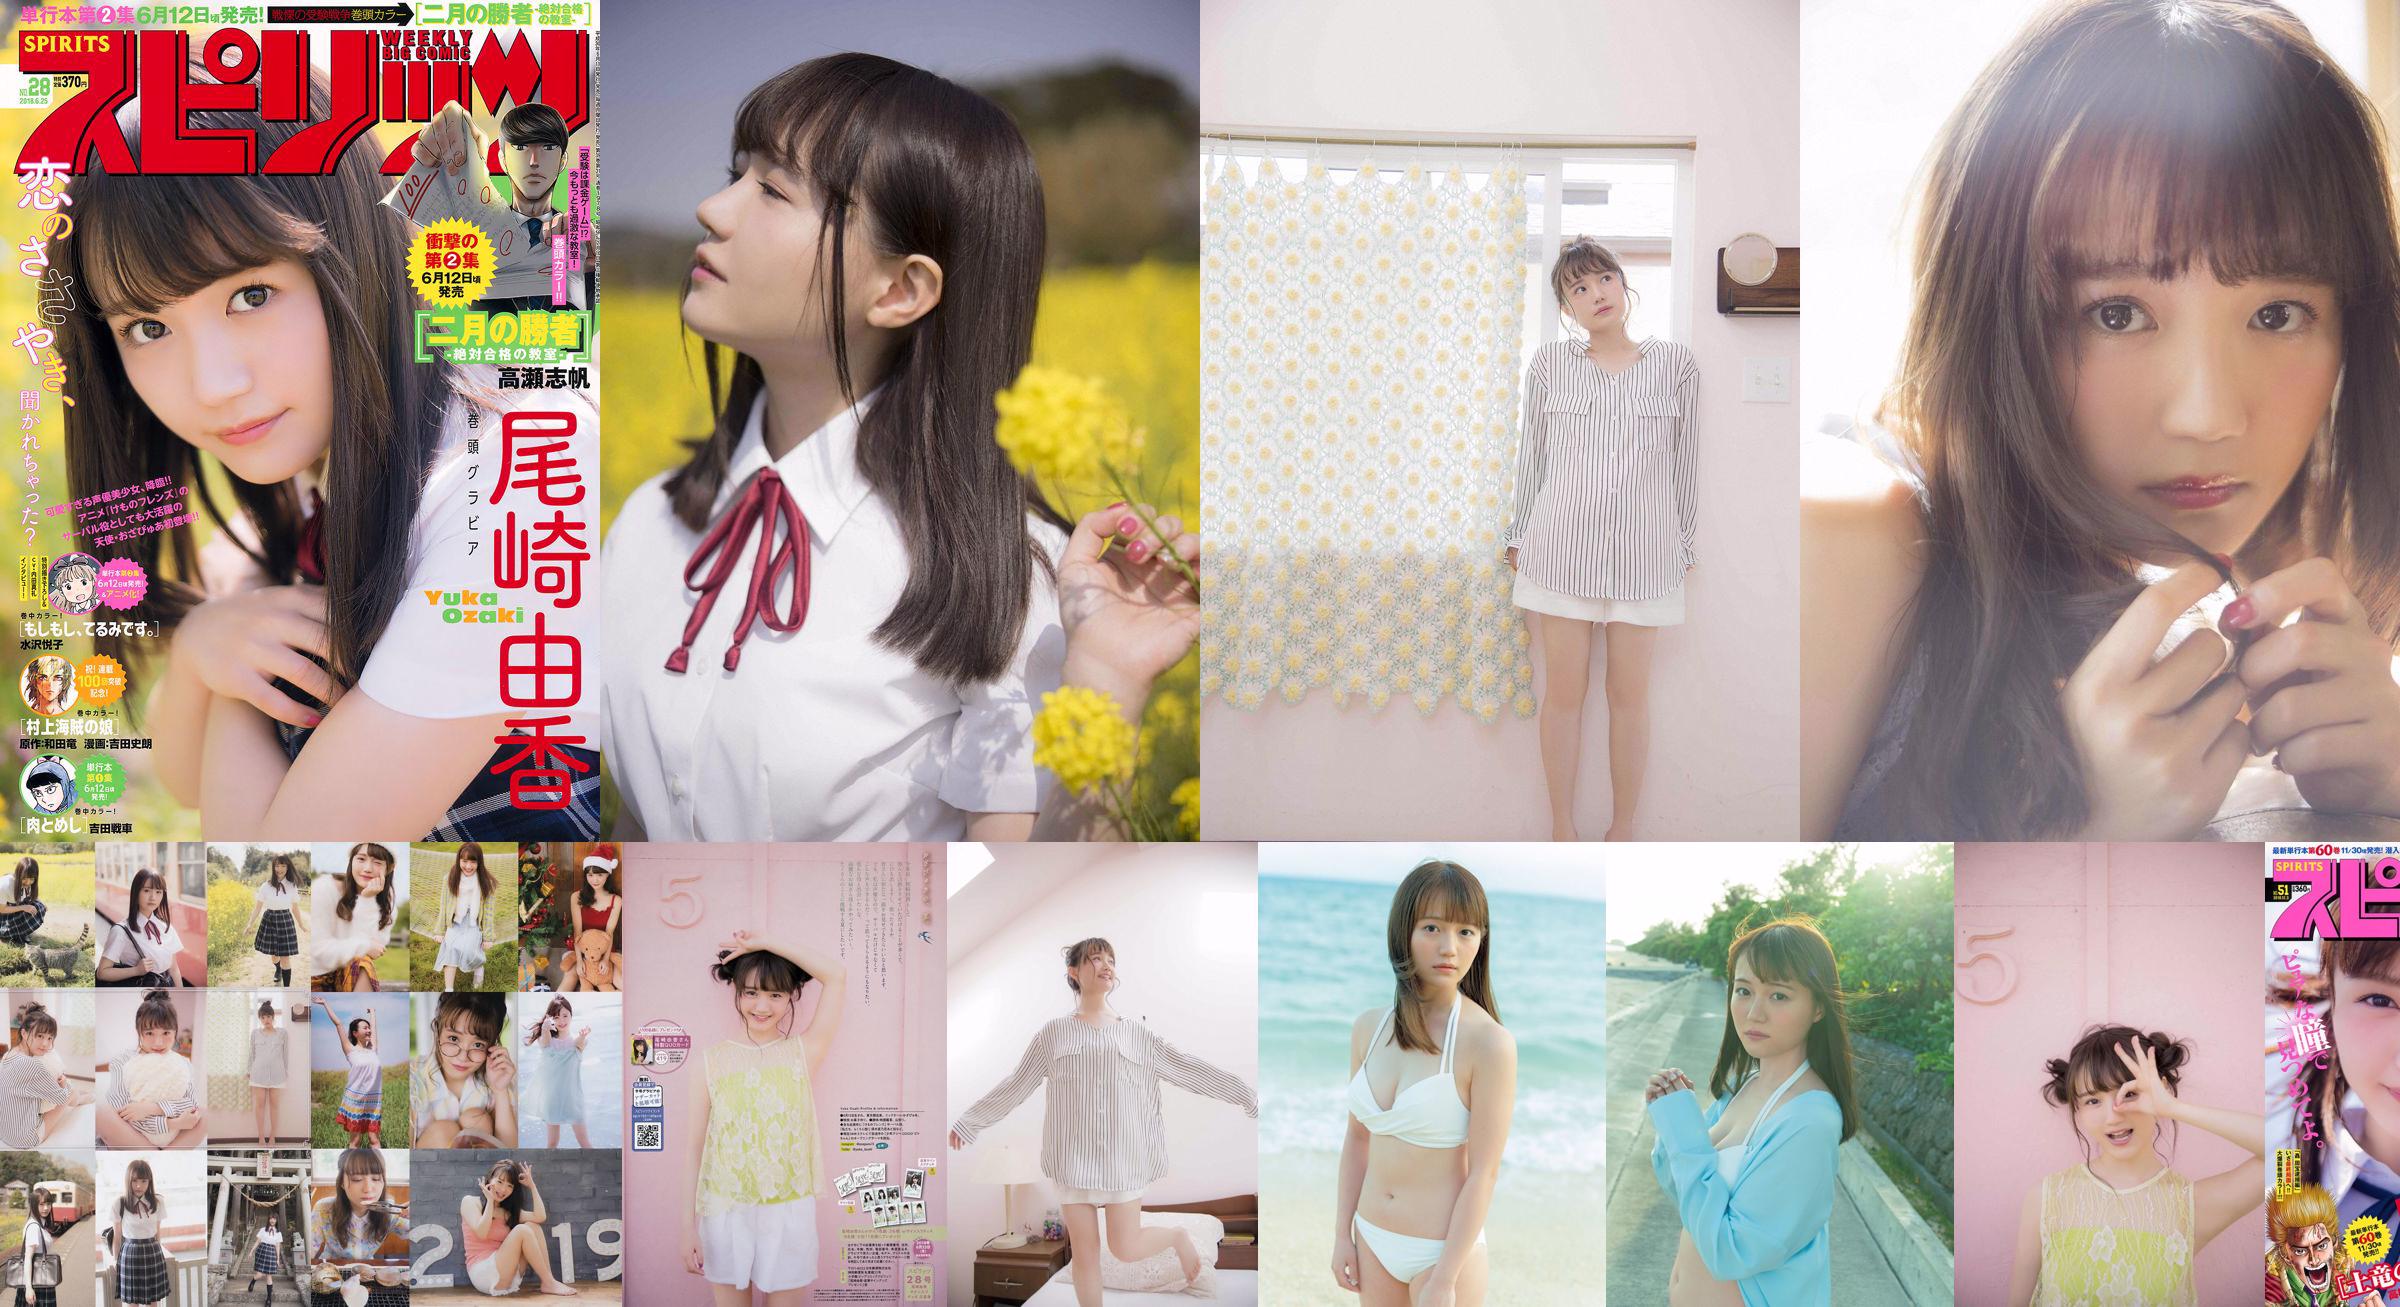 [FREITAG] Yuka Ozaki "Der Synchronsprecher der Hauptfigur des Anime" Kemono Friends "ist jetzt in einem weißen Bikini" Foto No.9710bc Seite 3